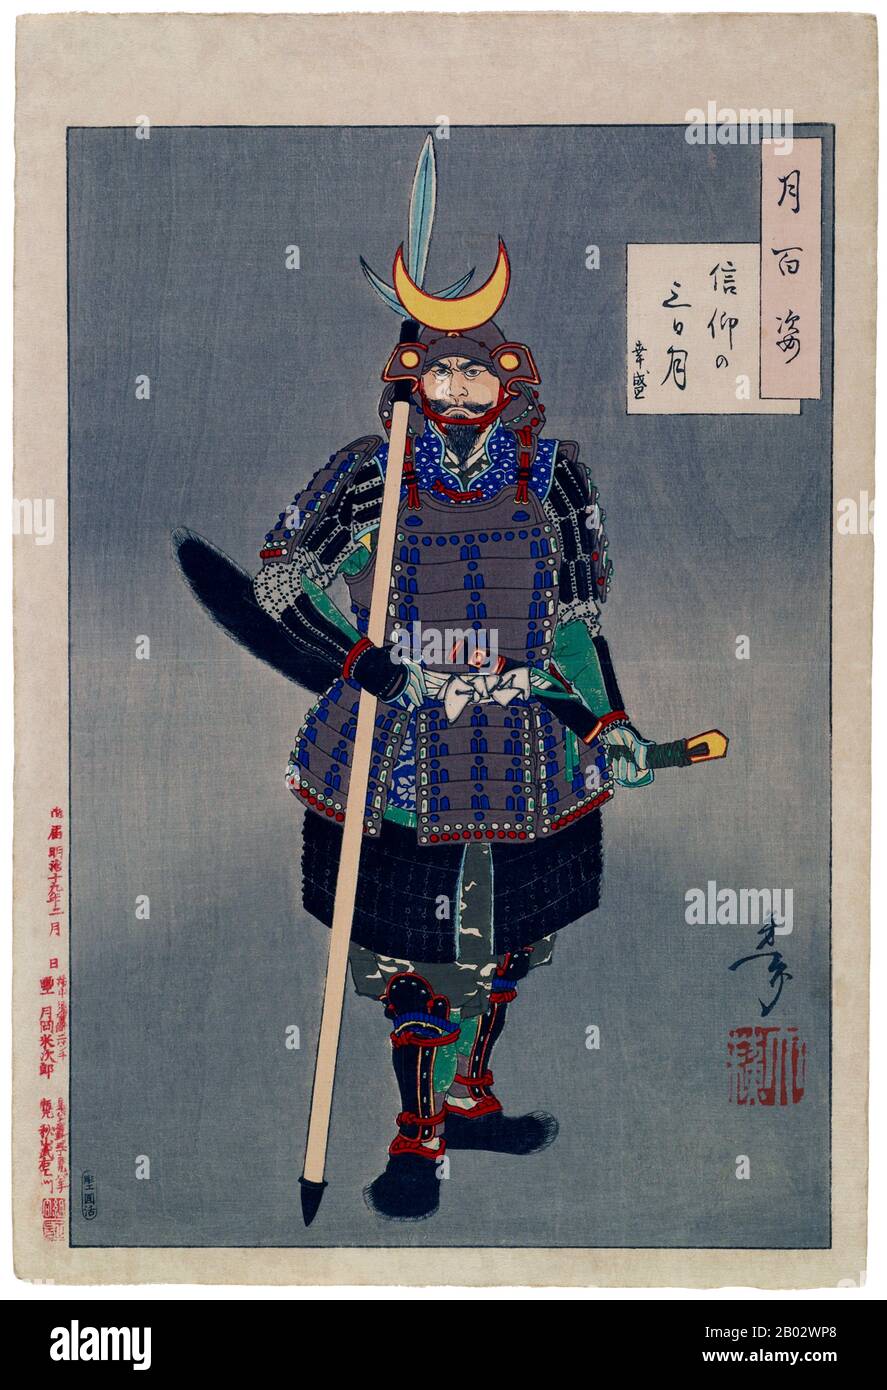 Tsukioka Yoshitoshi (30 avril 1839 – 9 juin 1892) était un artiste japonais et un maître d'impression de boisés Ukiyo-e. Yukimori (1543-76), un samouraï connu pour sa grande force et sa grande loyauté, a servi le seigneur de guerre Amako pendant une période de l'histoire japonaise appelée 'Sengoku', ou 'le pays en guerre'. Il porte un costume d'armure appelé 'tosei gousoku' ('équipement de dern') qui a été conçu au XVIe siècle pour être porté par un soldat du pied. Banque D'Images